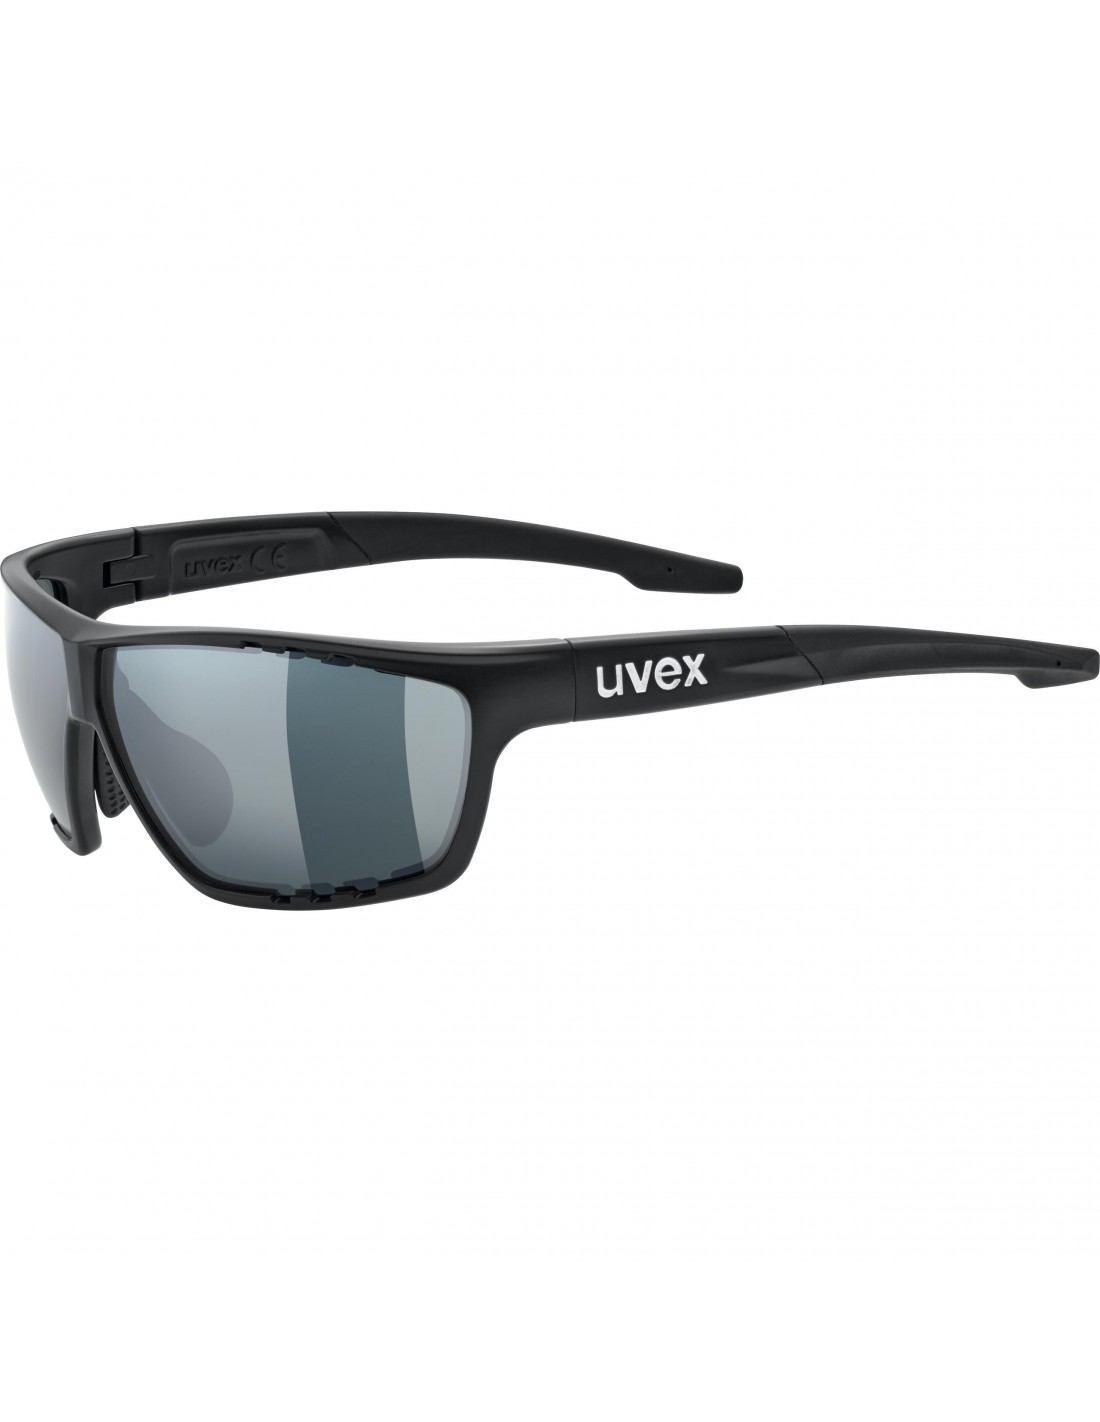 Uvex Sportstyle 706 CV, black mat, lens: variomatic uvex colorvision ltm. red Cat. 1-3 von Uvex